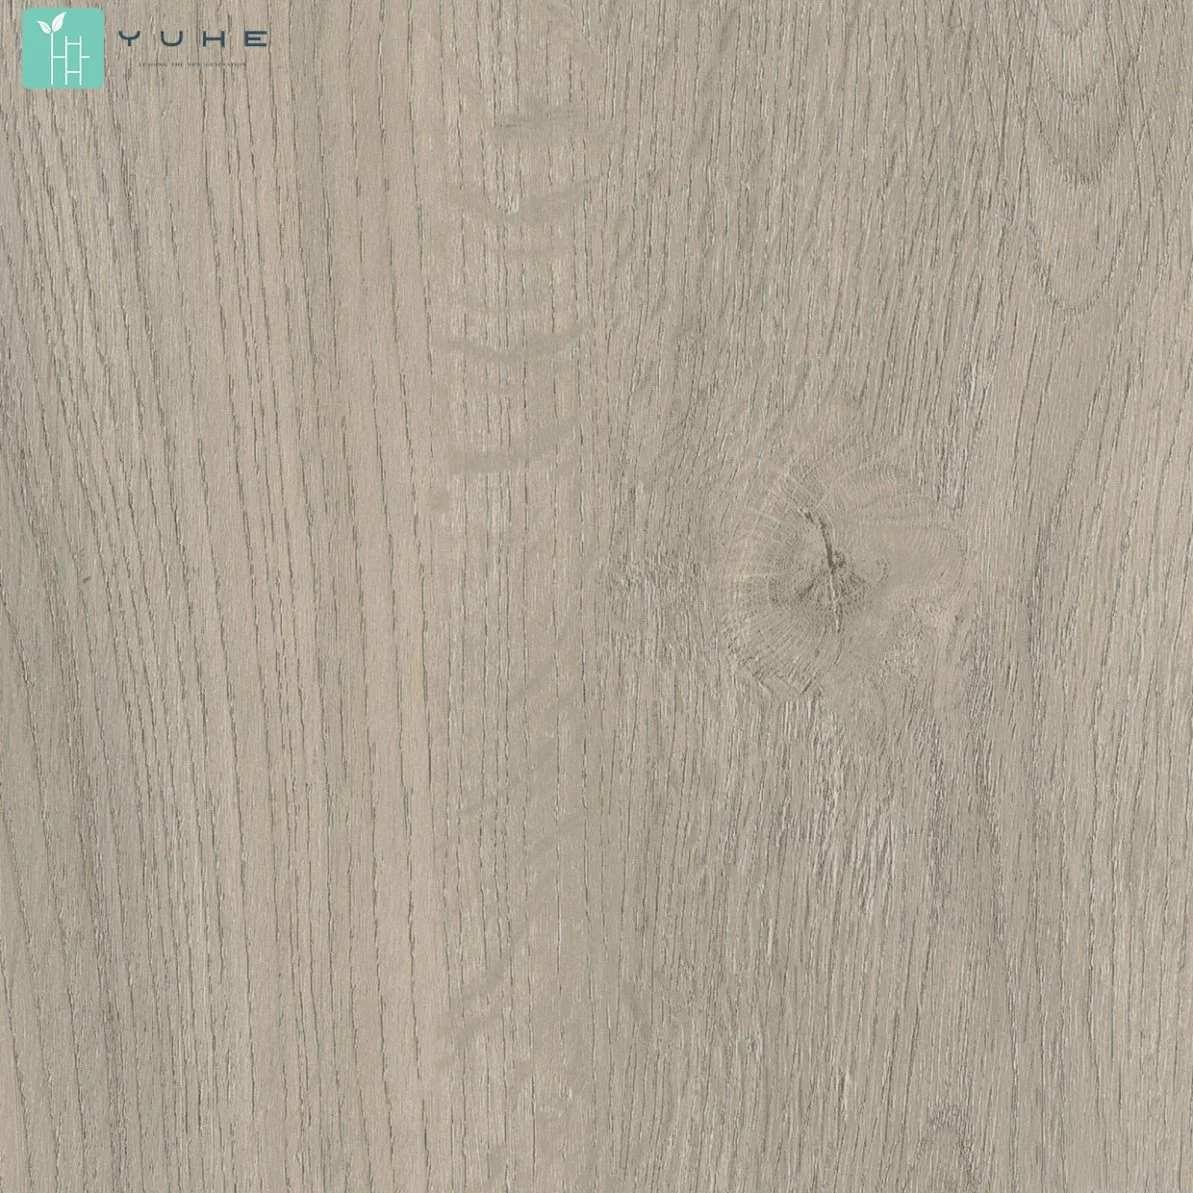 Silk Oak Wood Yh1101-1 Spc Wood Flooring Waterproof Durable Vinyl Flooring From Changzhou